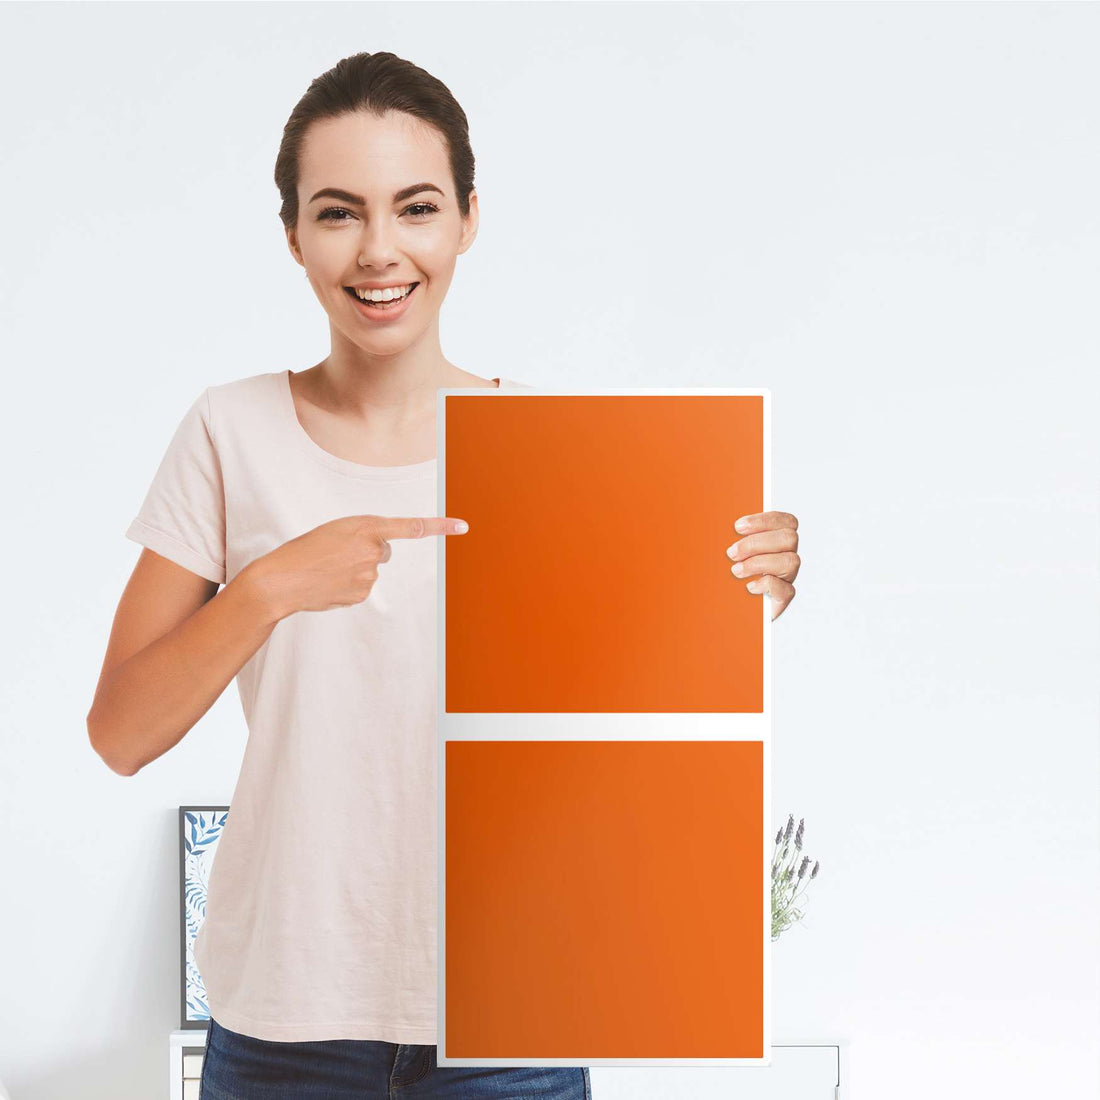 Klebefolie für Möbel Orange Dark - IKEA Expedit Regal 2 Türen Hoch - Folie